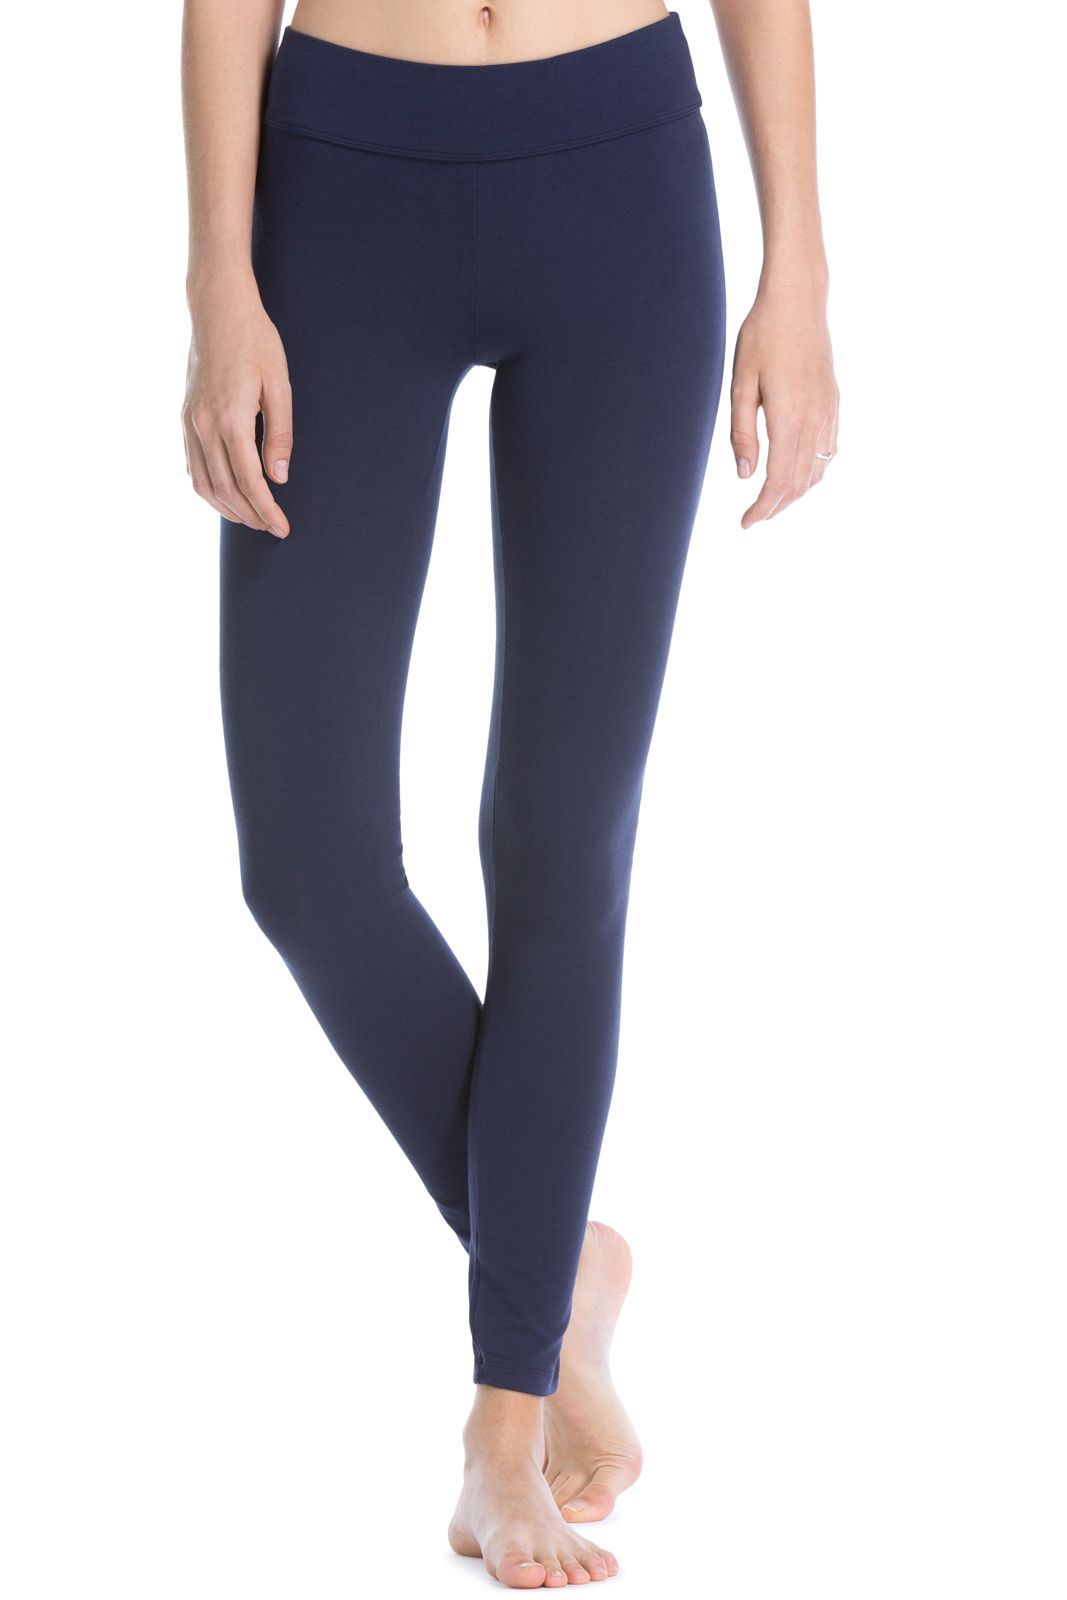 MRULIC yoga pants Yoga Leggings For Womens Ankle Length Pants For